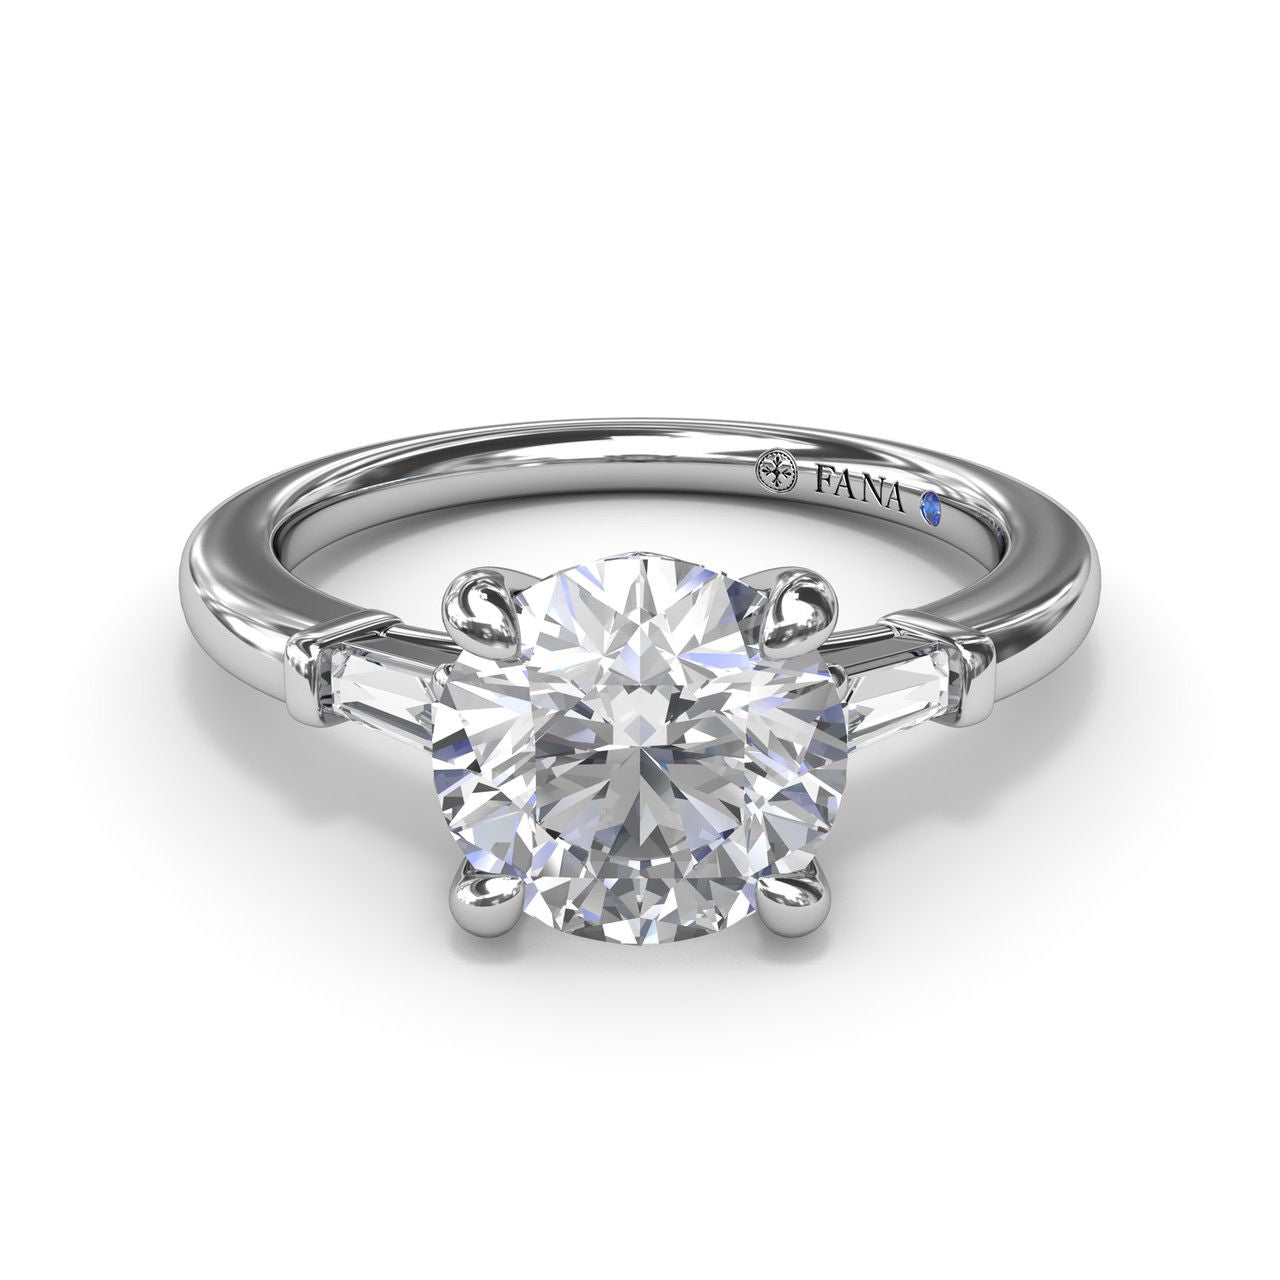 FANA 14 Karat White Gold 3 Stone Baguette Diamond Engagement Ring S4070/WG